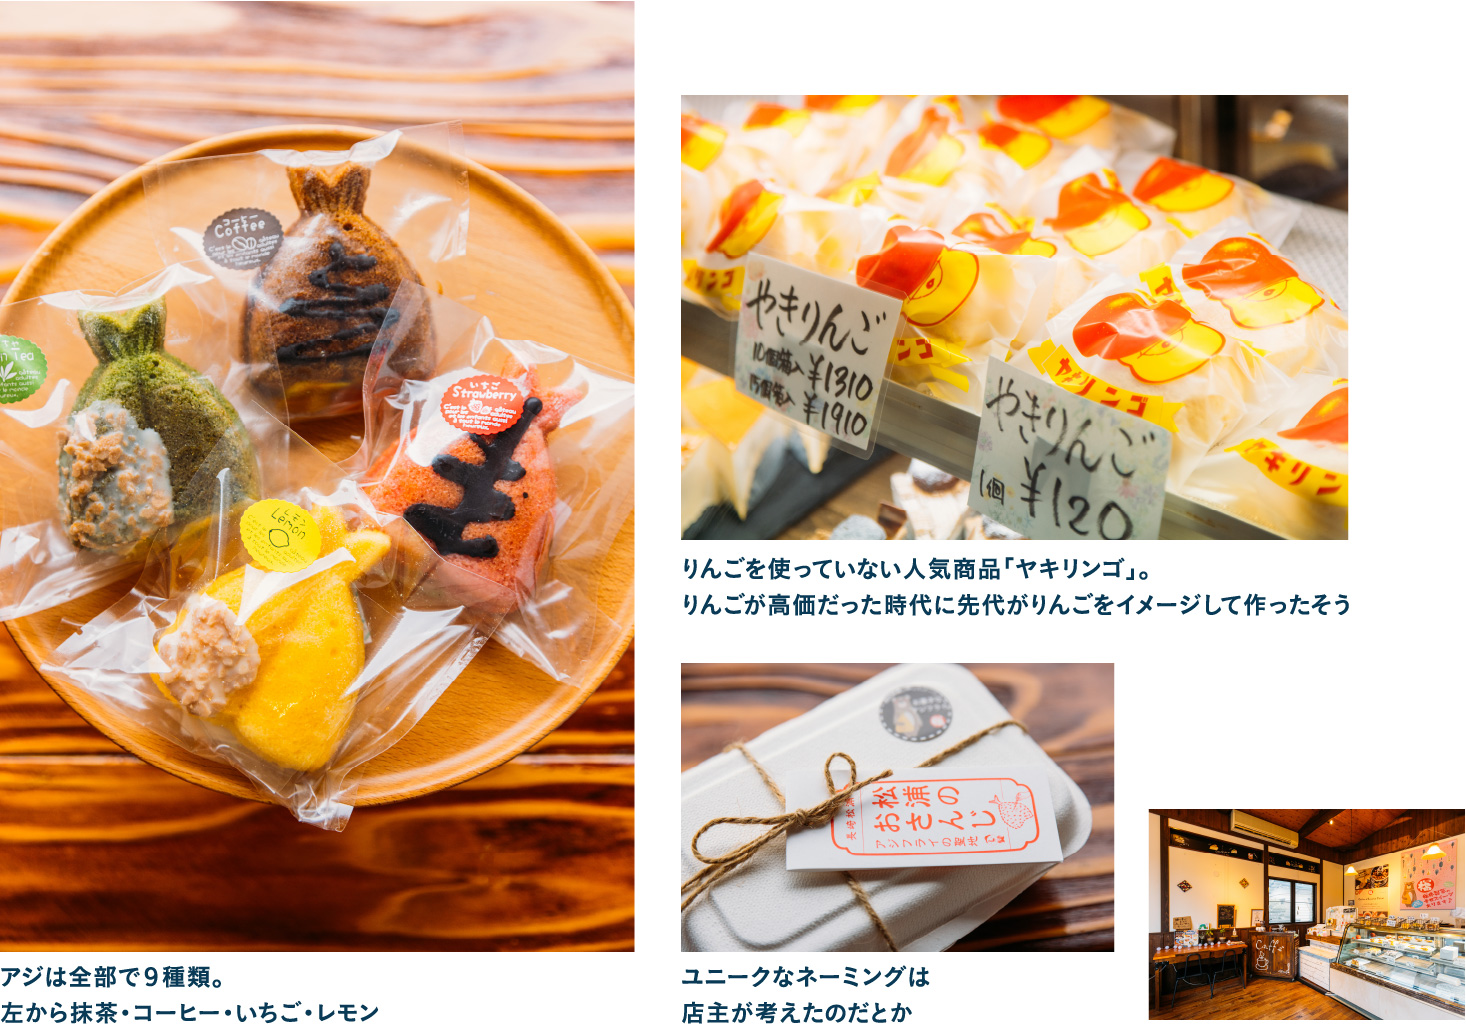 アジフライ形の焼きドーナツがかわいい福井製菓舗で松浦ならではの土産をGET